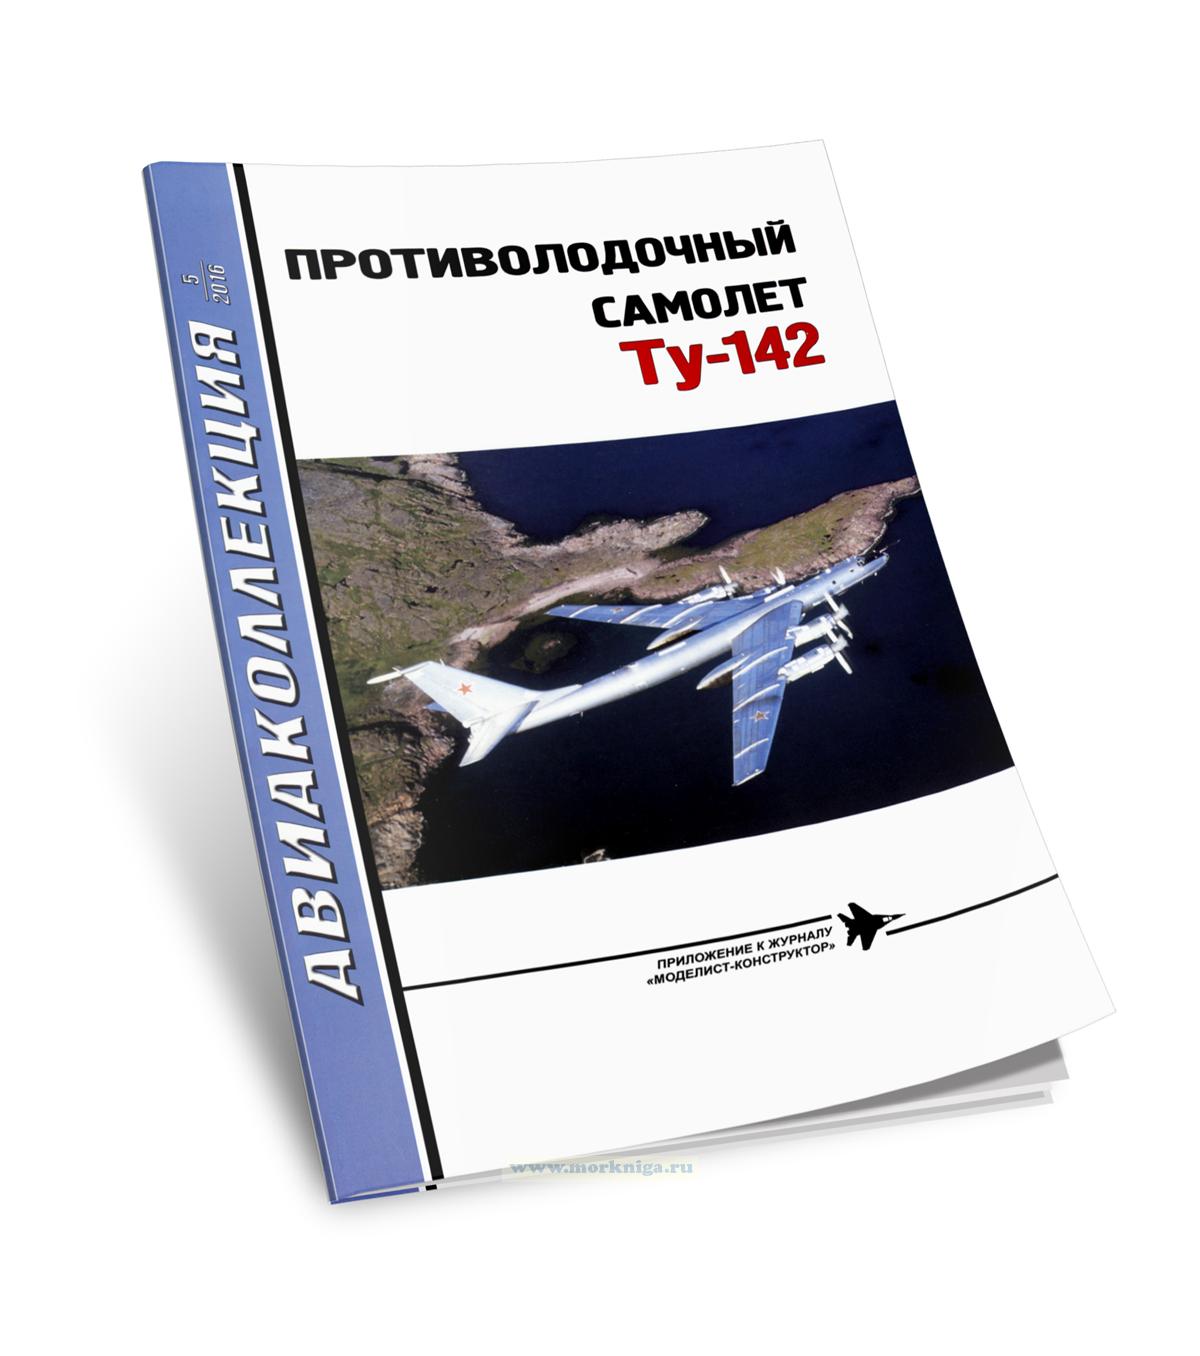 Противолодочный самолет Ту-142. Авиаколлекция №5 (2016)